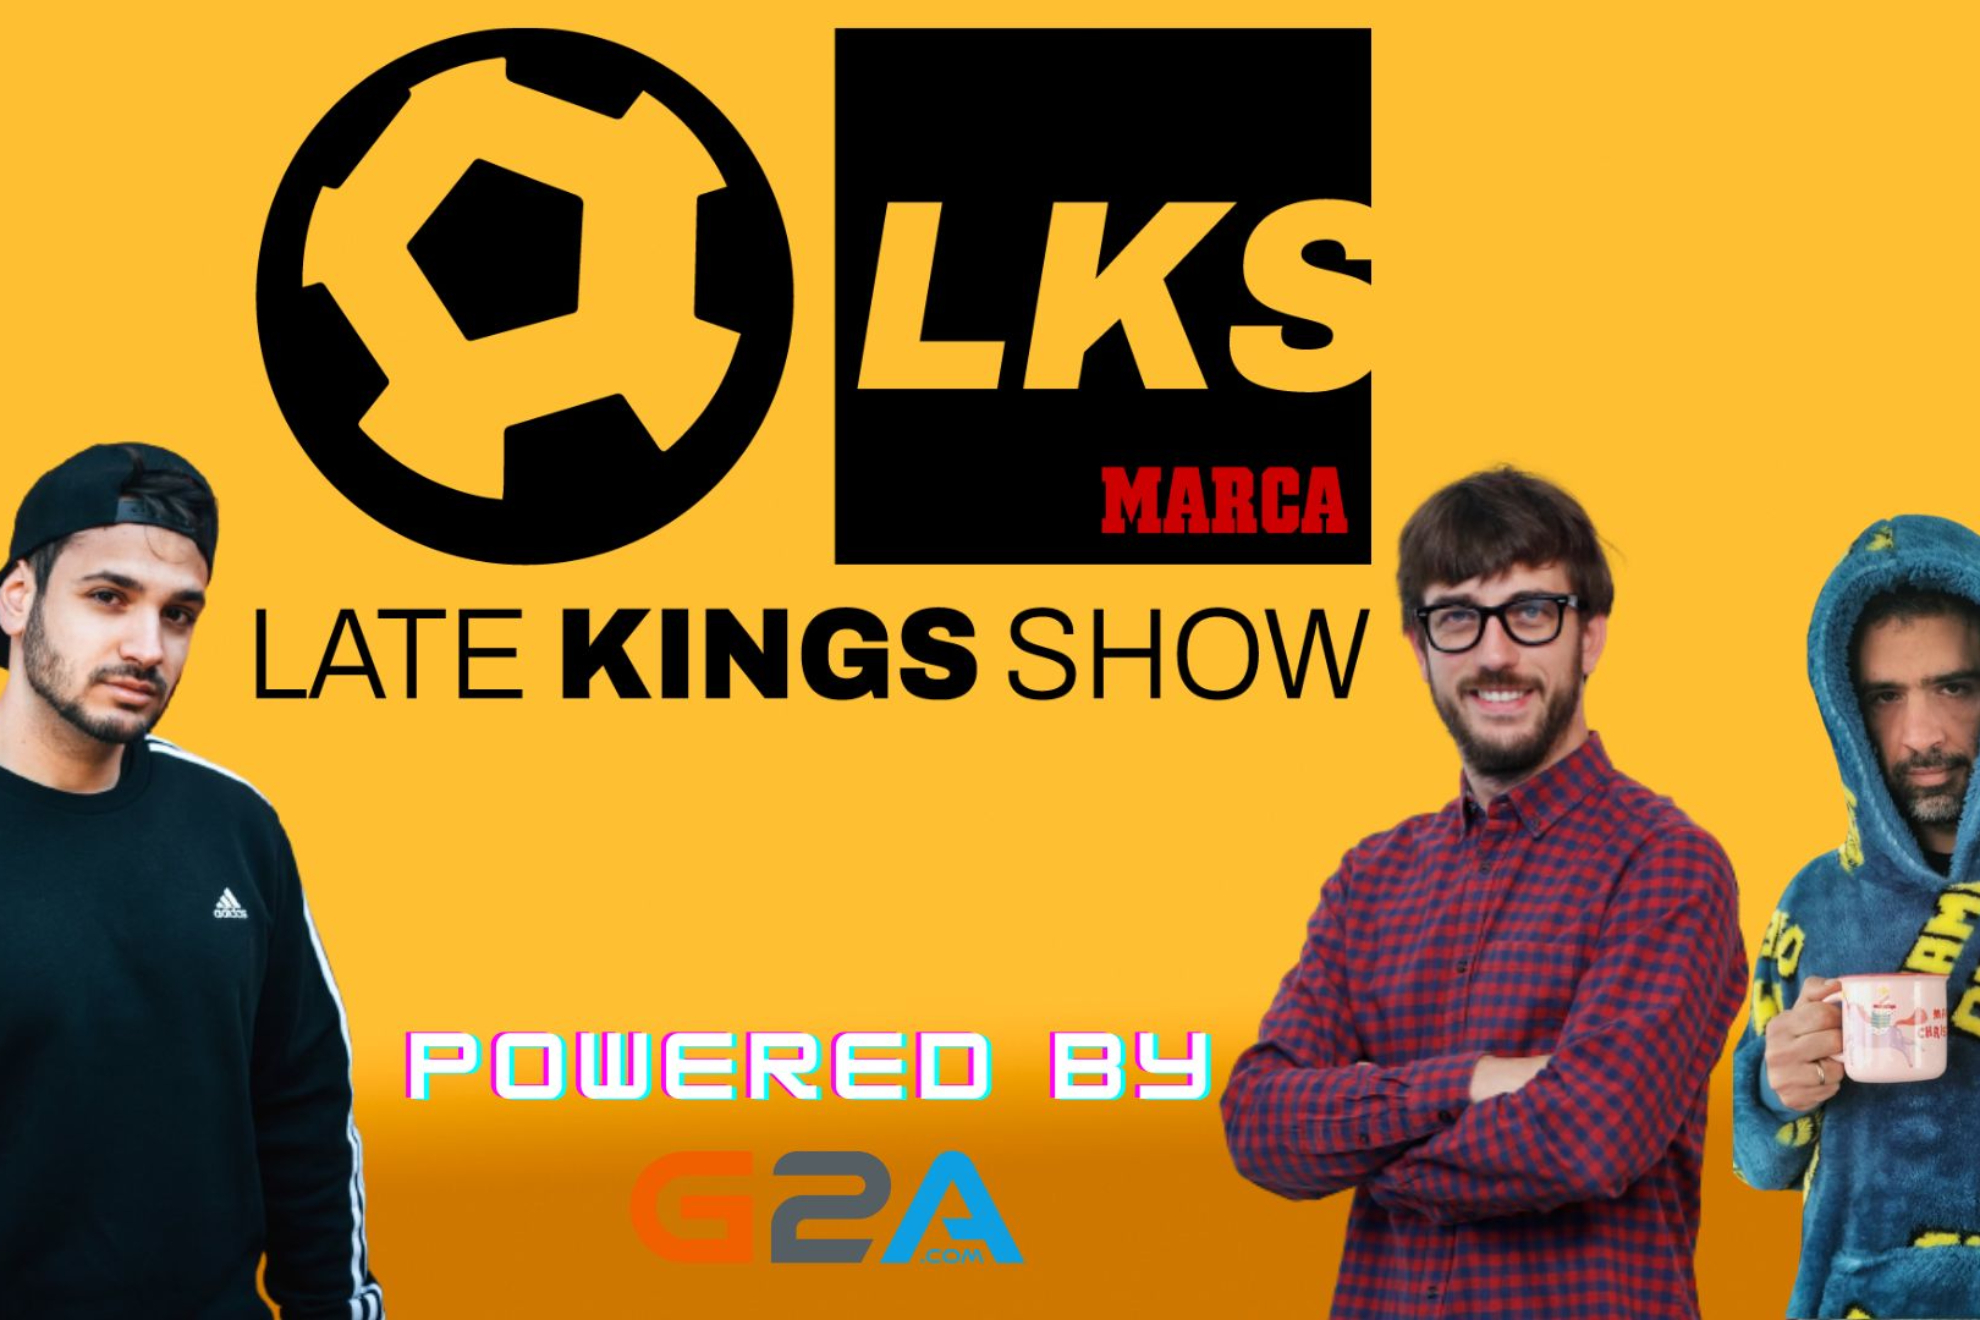 Late Kings Show by G2A con lo mejor de los octavos de final de Queens y Kings League